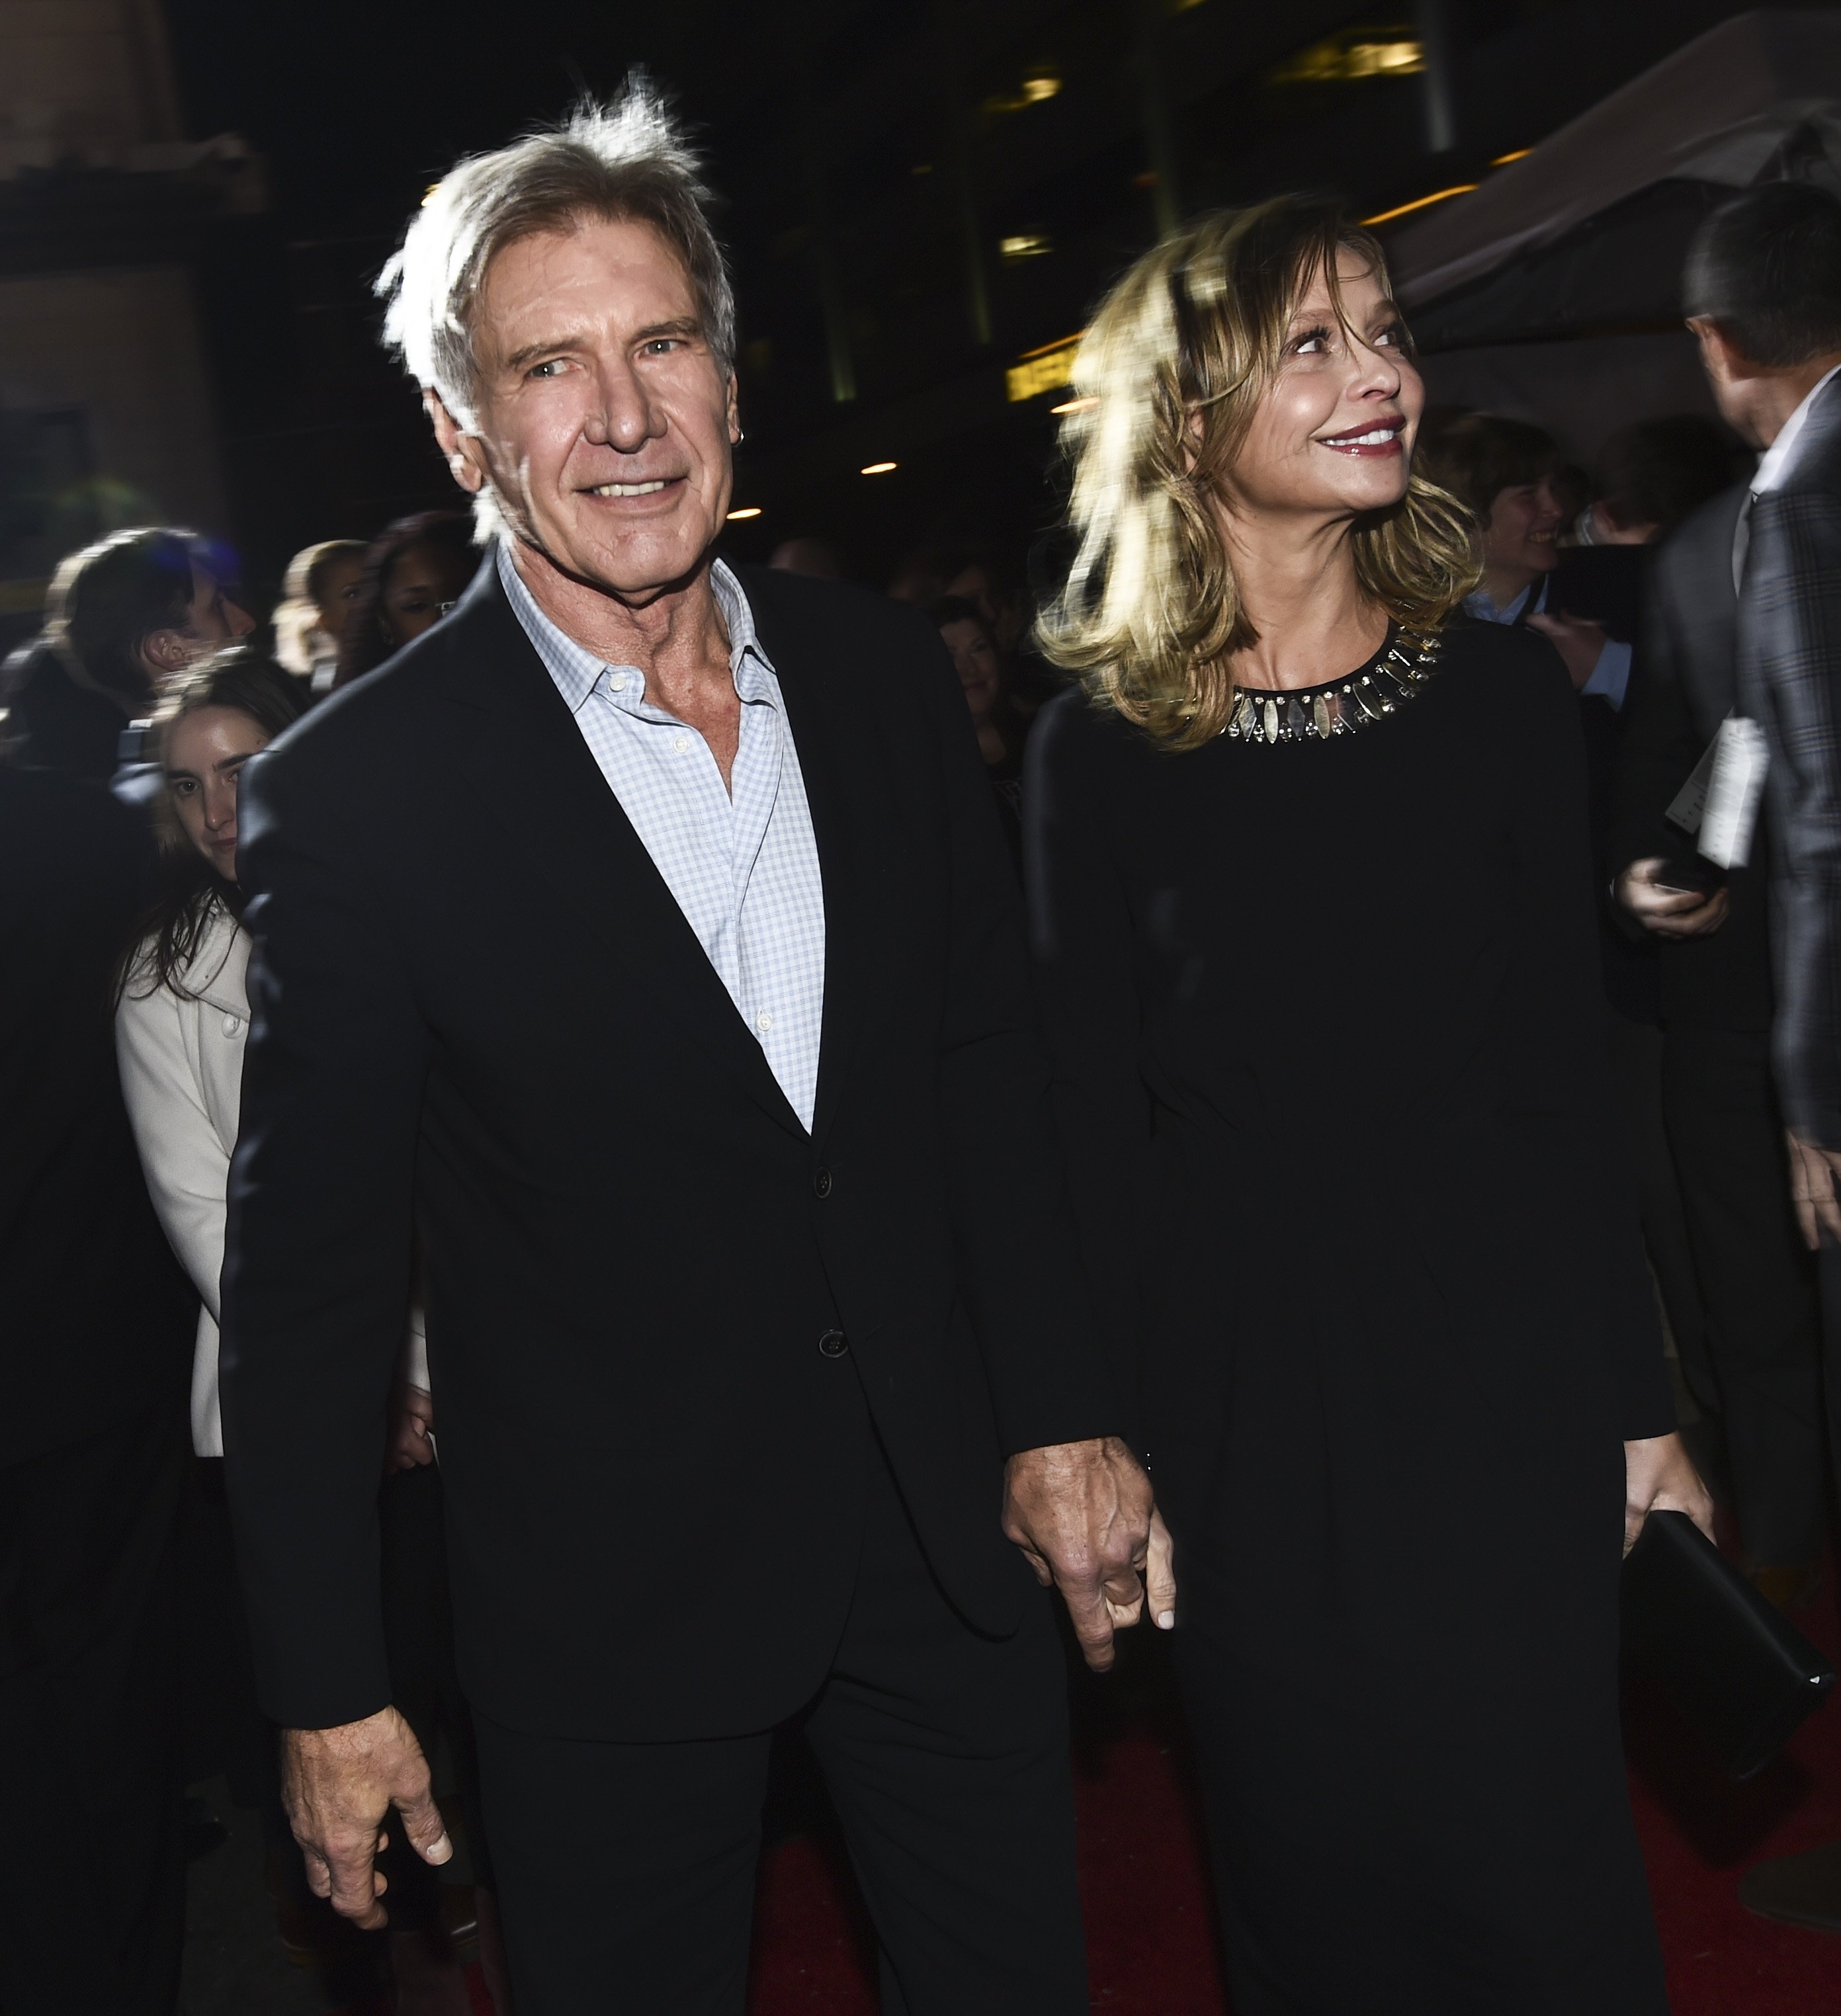 Harrison Ford und Calista Flockhart bei der Filmpremiere von "Star Wars: The Force Awakens" in Los Angeles, Amerika am 14. Dezember 2015 | Quelle: Getty Images